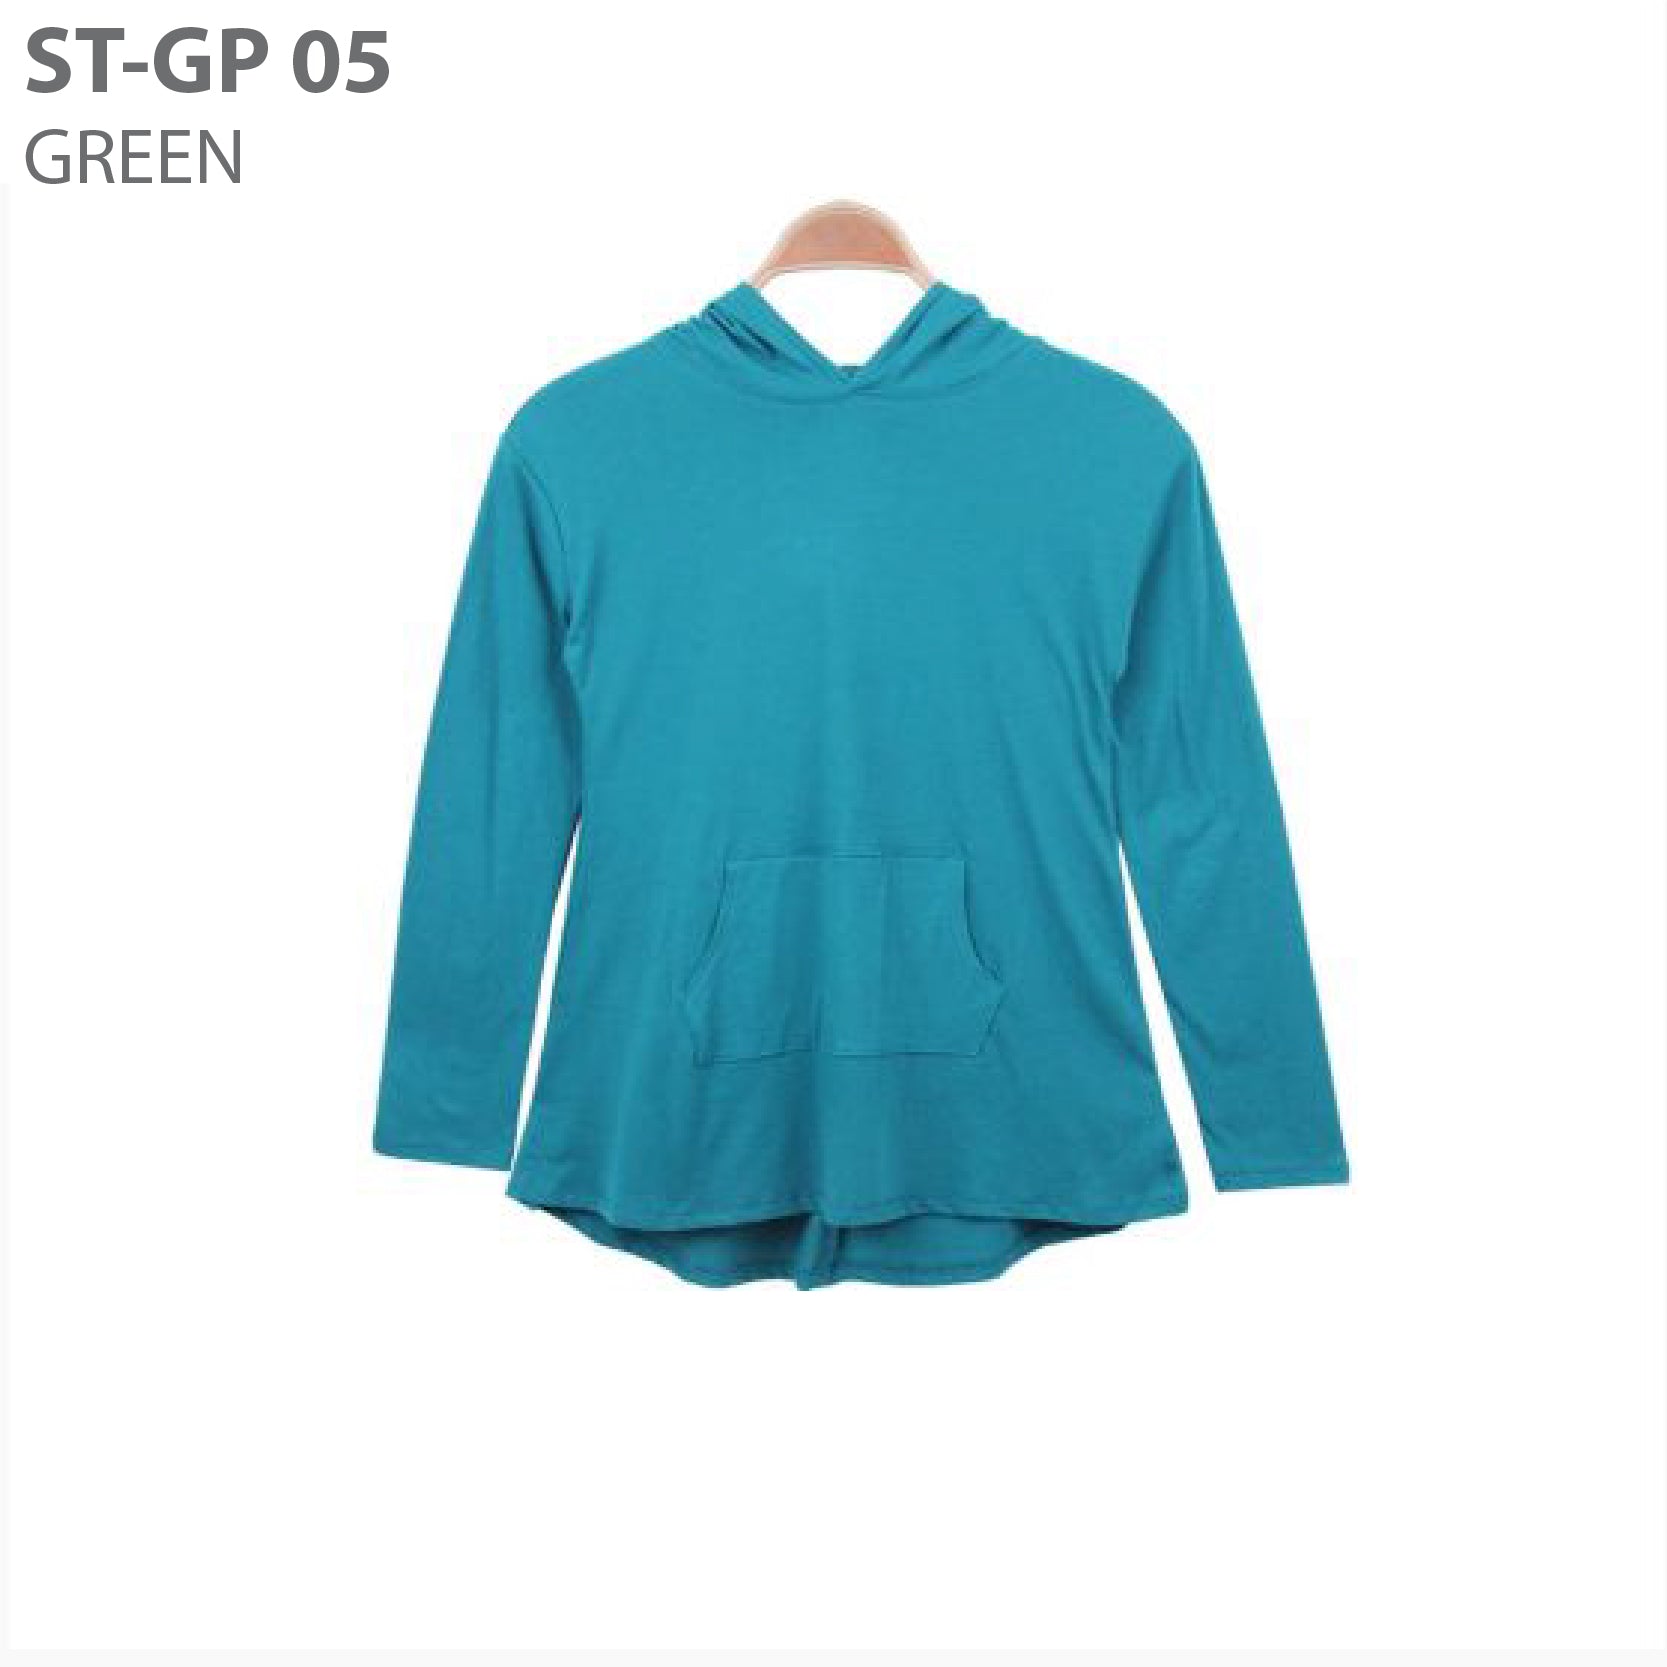 Hoodie wanita -Women t-shirt hoodie avail in 4 colours (ST-GP 05)